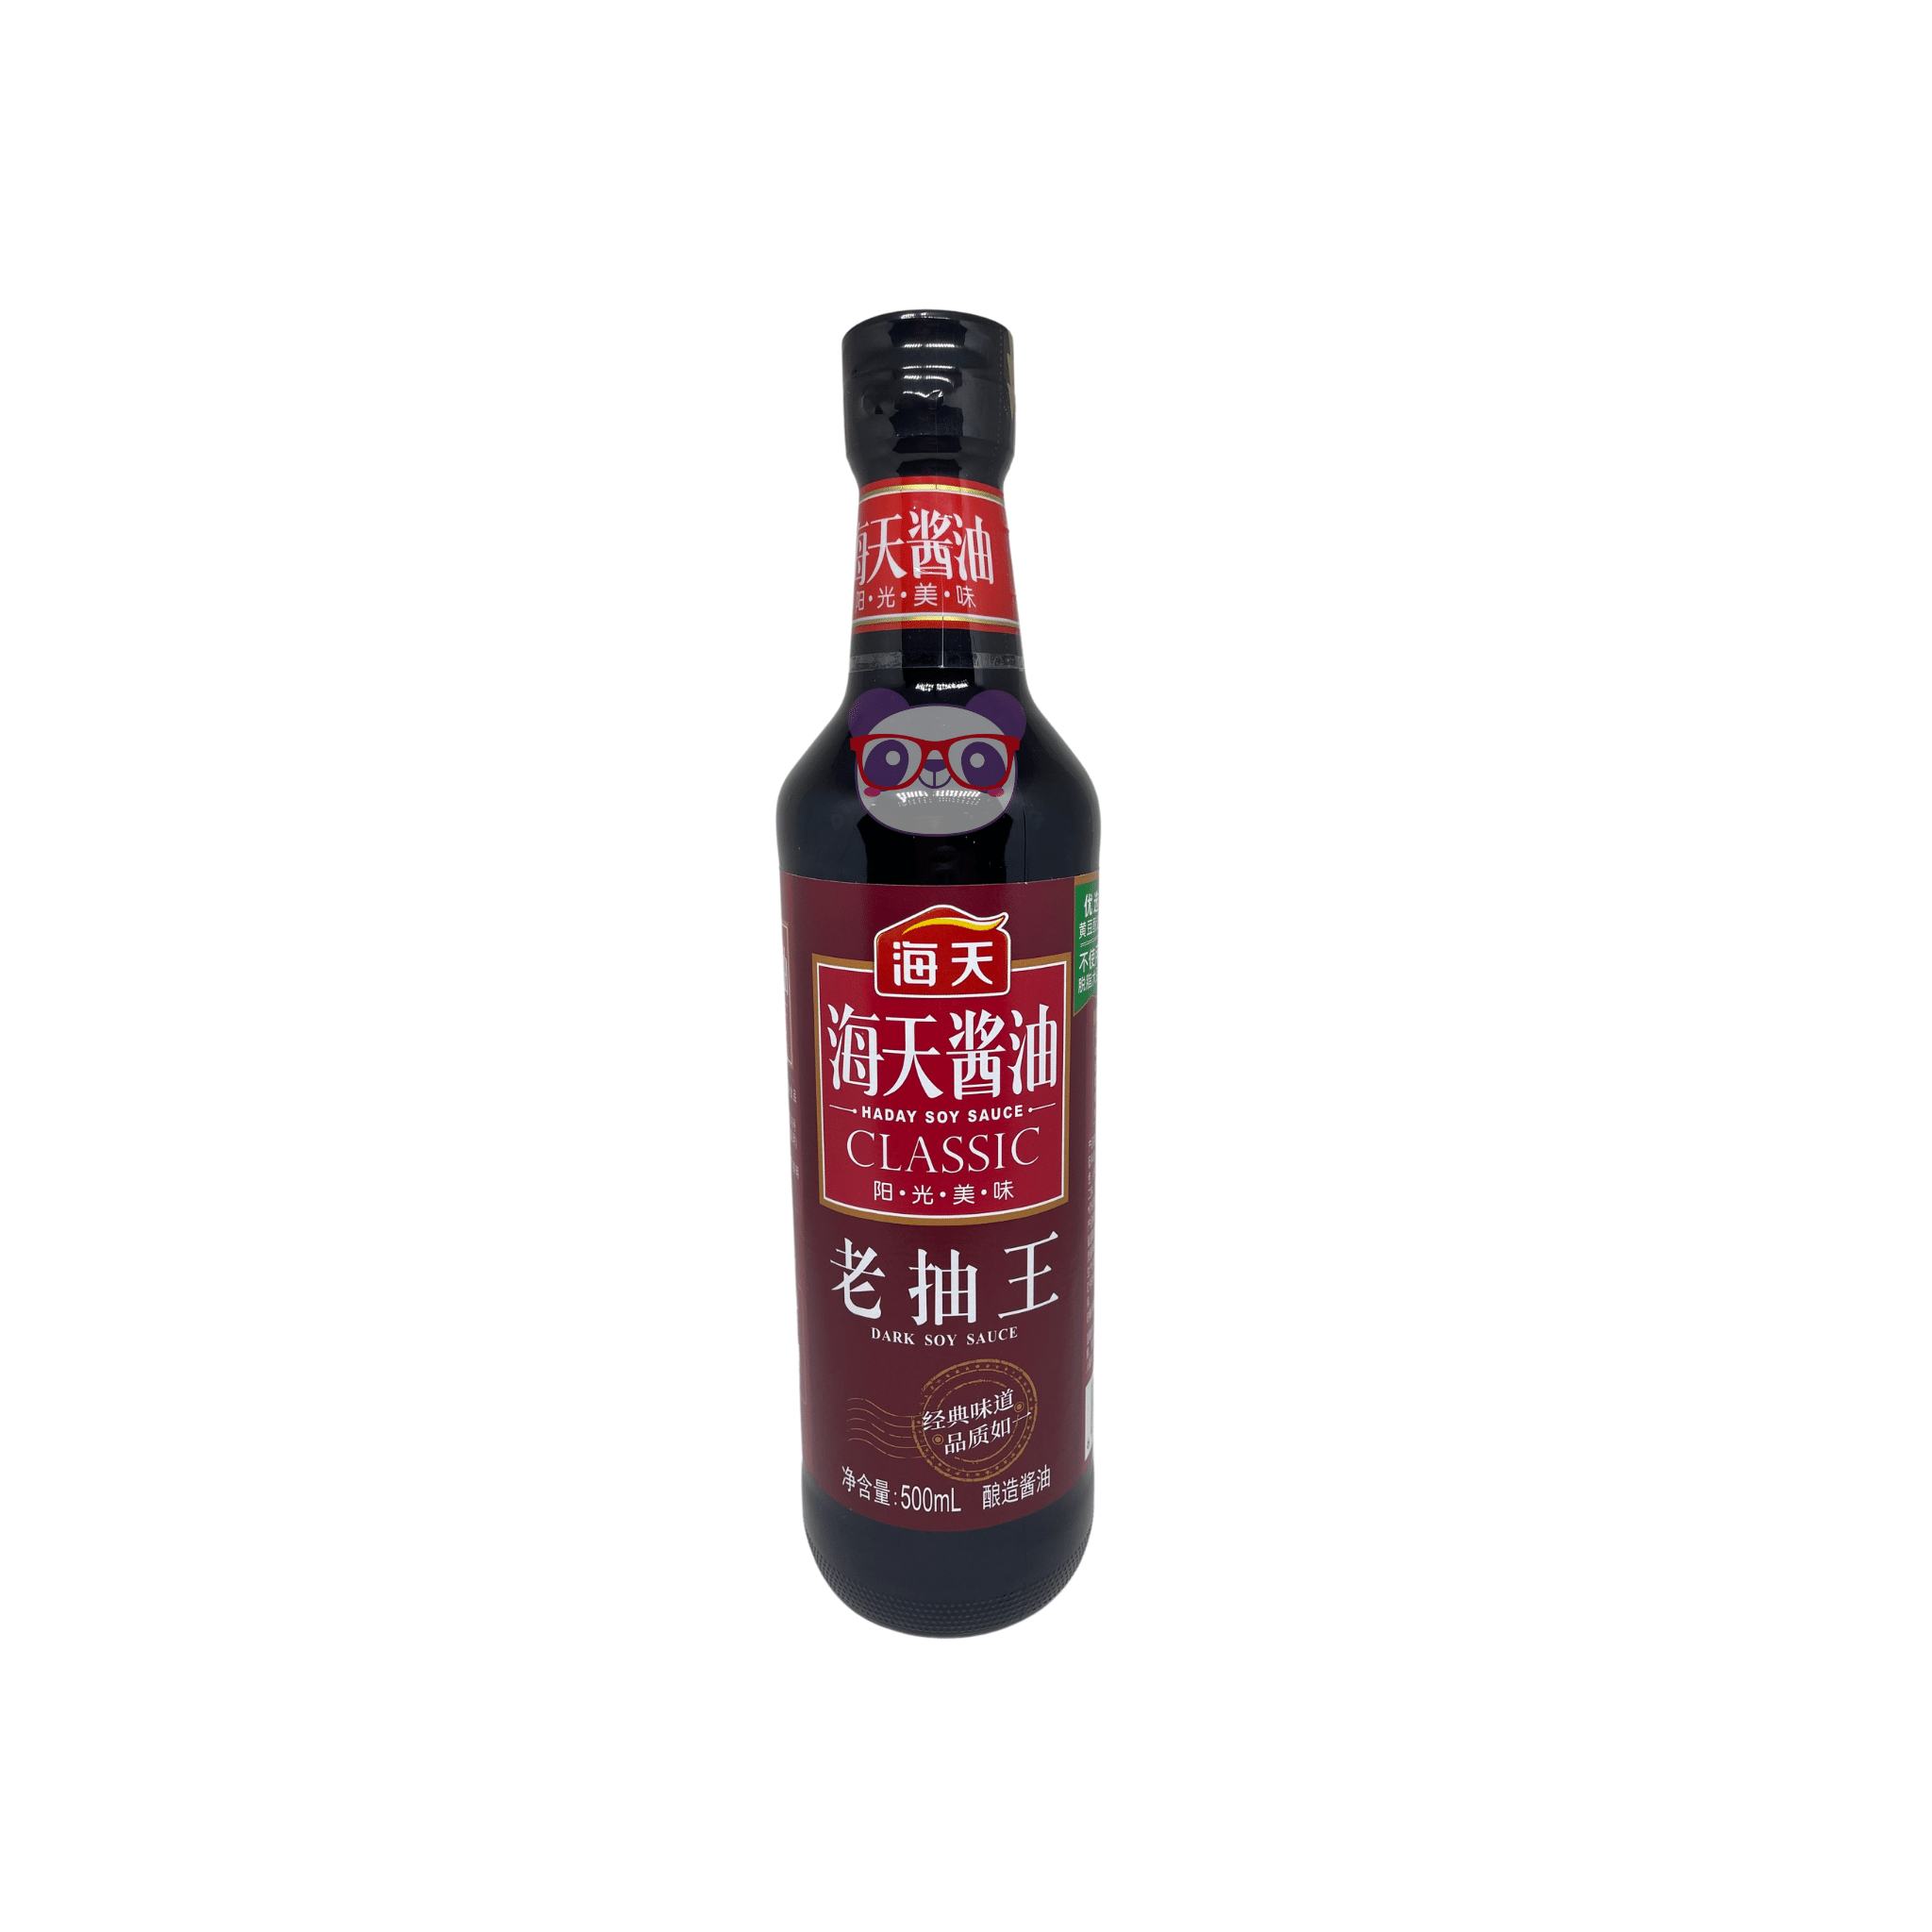 Haday Soy Sauce Classic (Dark Soy Sauce) - Foshanshi 500ml - Mei Wei